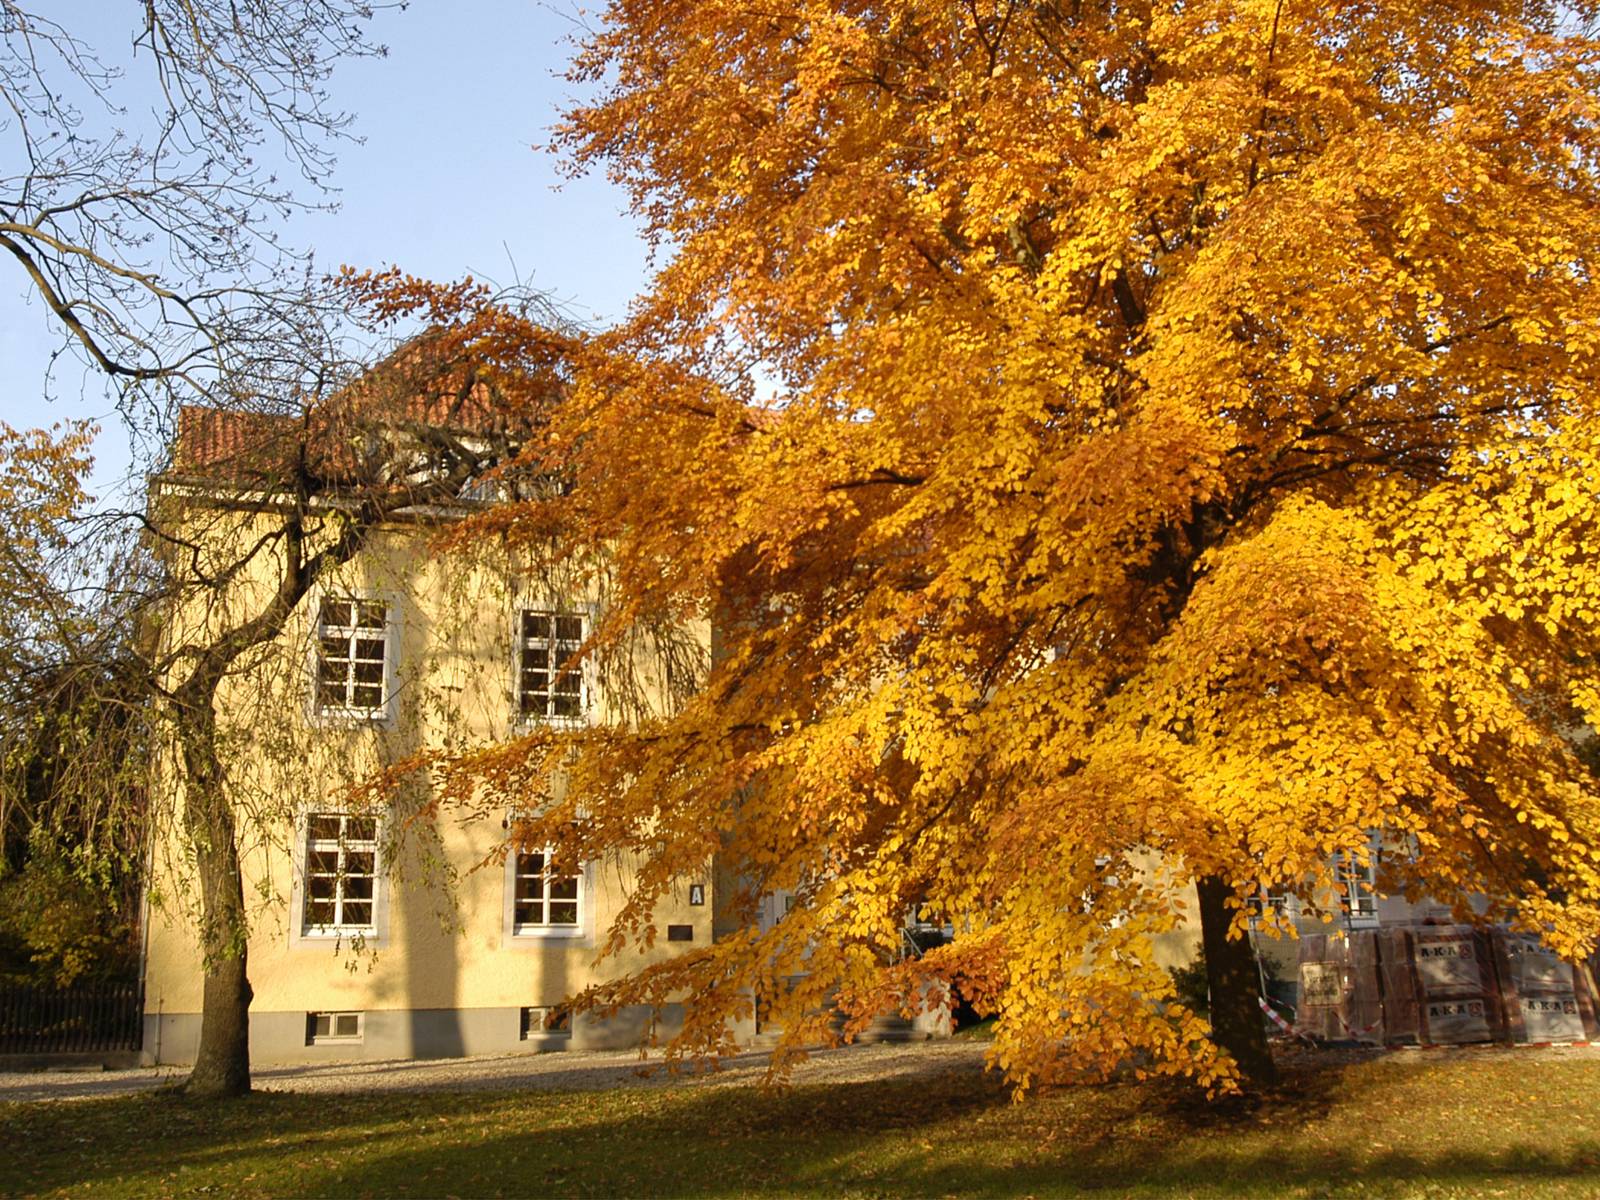 Laubbaum im Herbst in einer parkähnlichen Umgebung. Im Hintergrund ist die Seitenansicht eines Gebäudes zu sehen, welches eine gelbe Fassade hat.